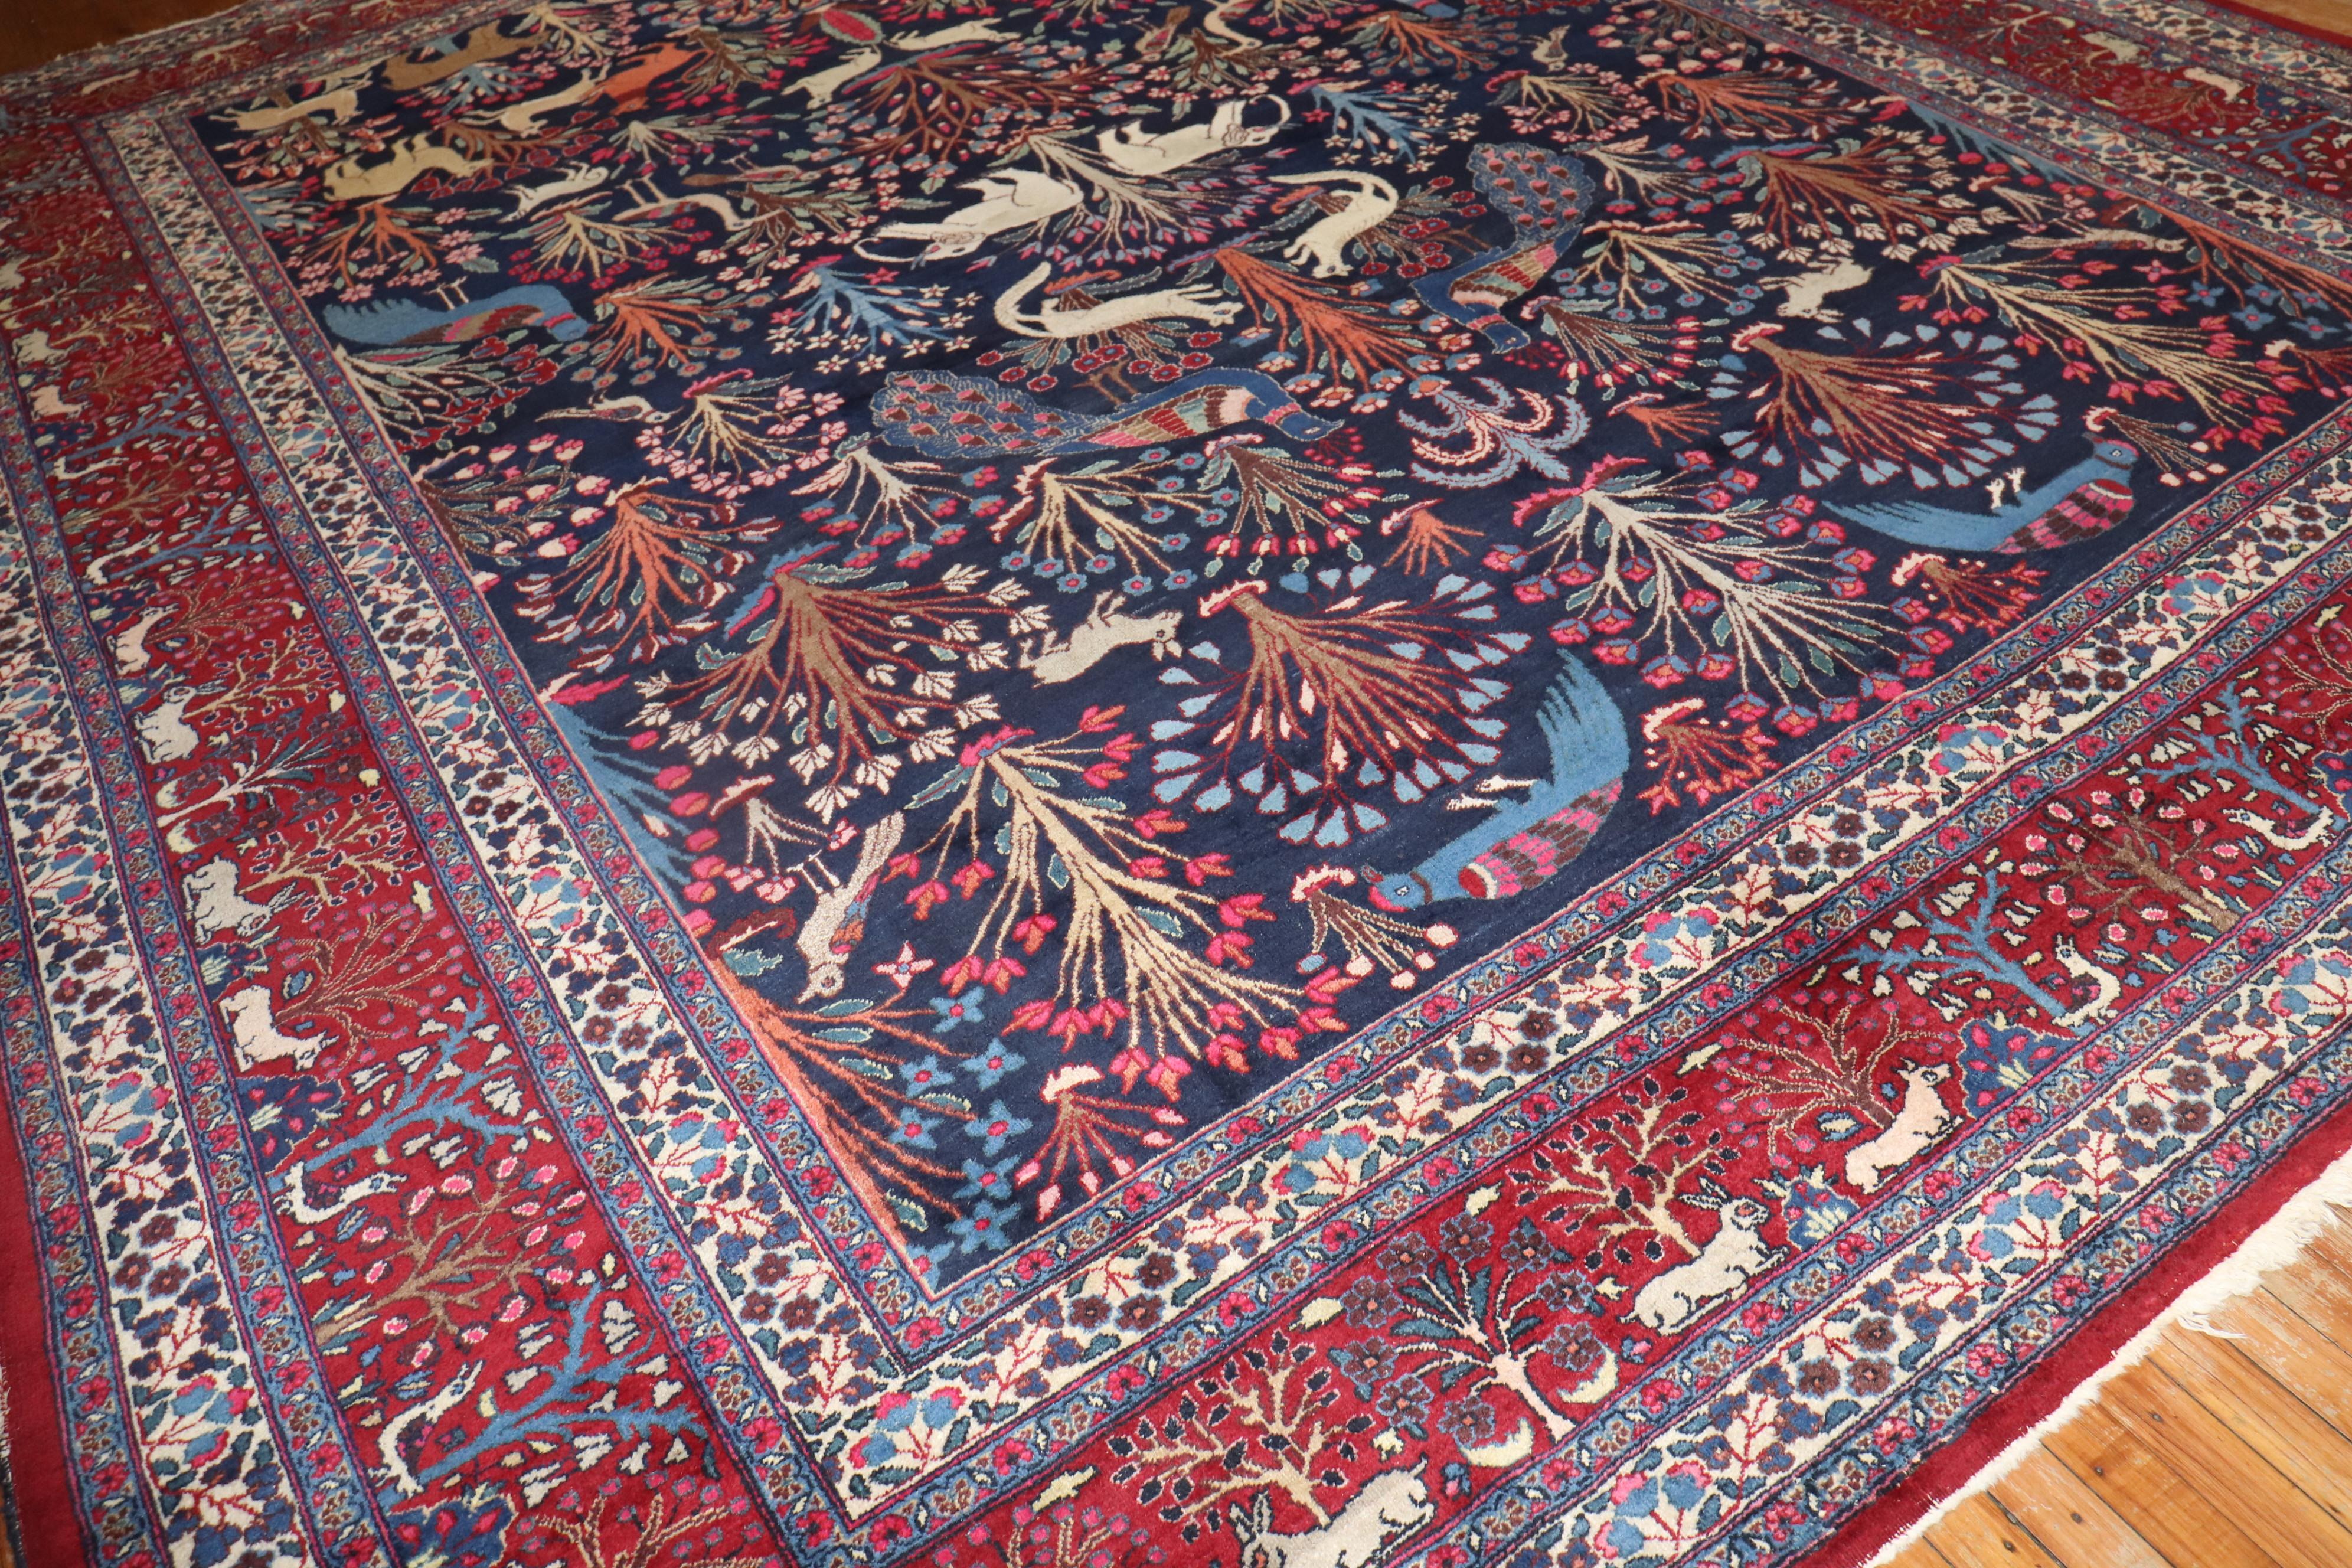 Eine frühe 20. Jahrhundert Persian Animal Pictorial Large Room Size Teppich

teppich nr. j3141
Größe 11' 7